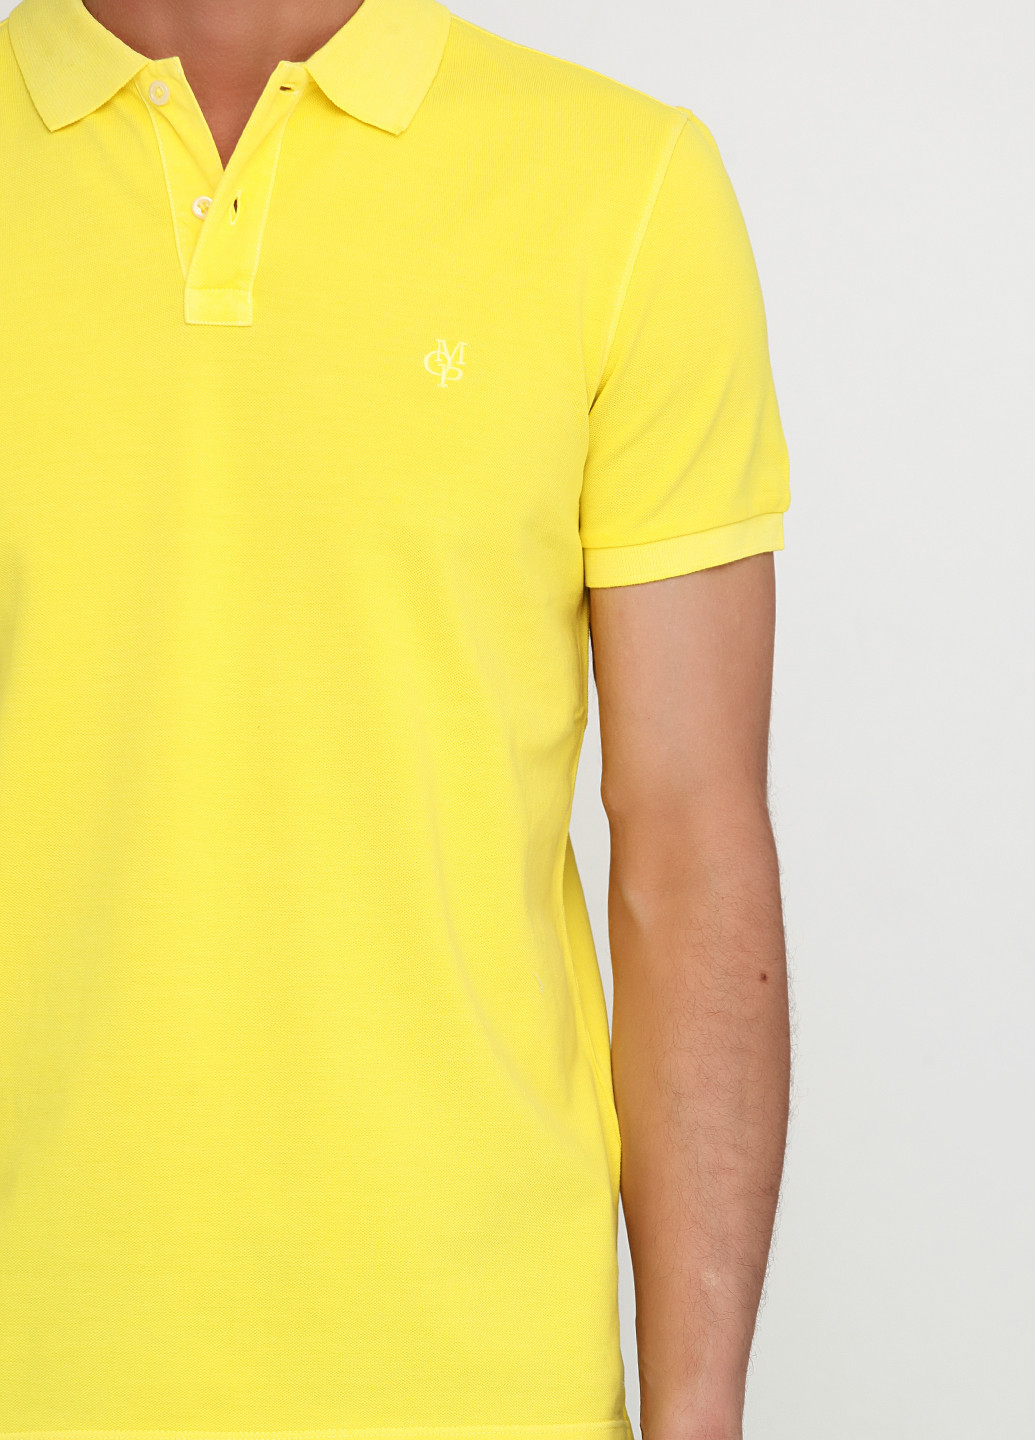 Желтая футболка-поло для мужчин Marc O'Polo однотонная